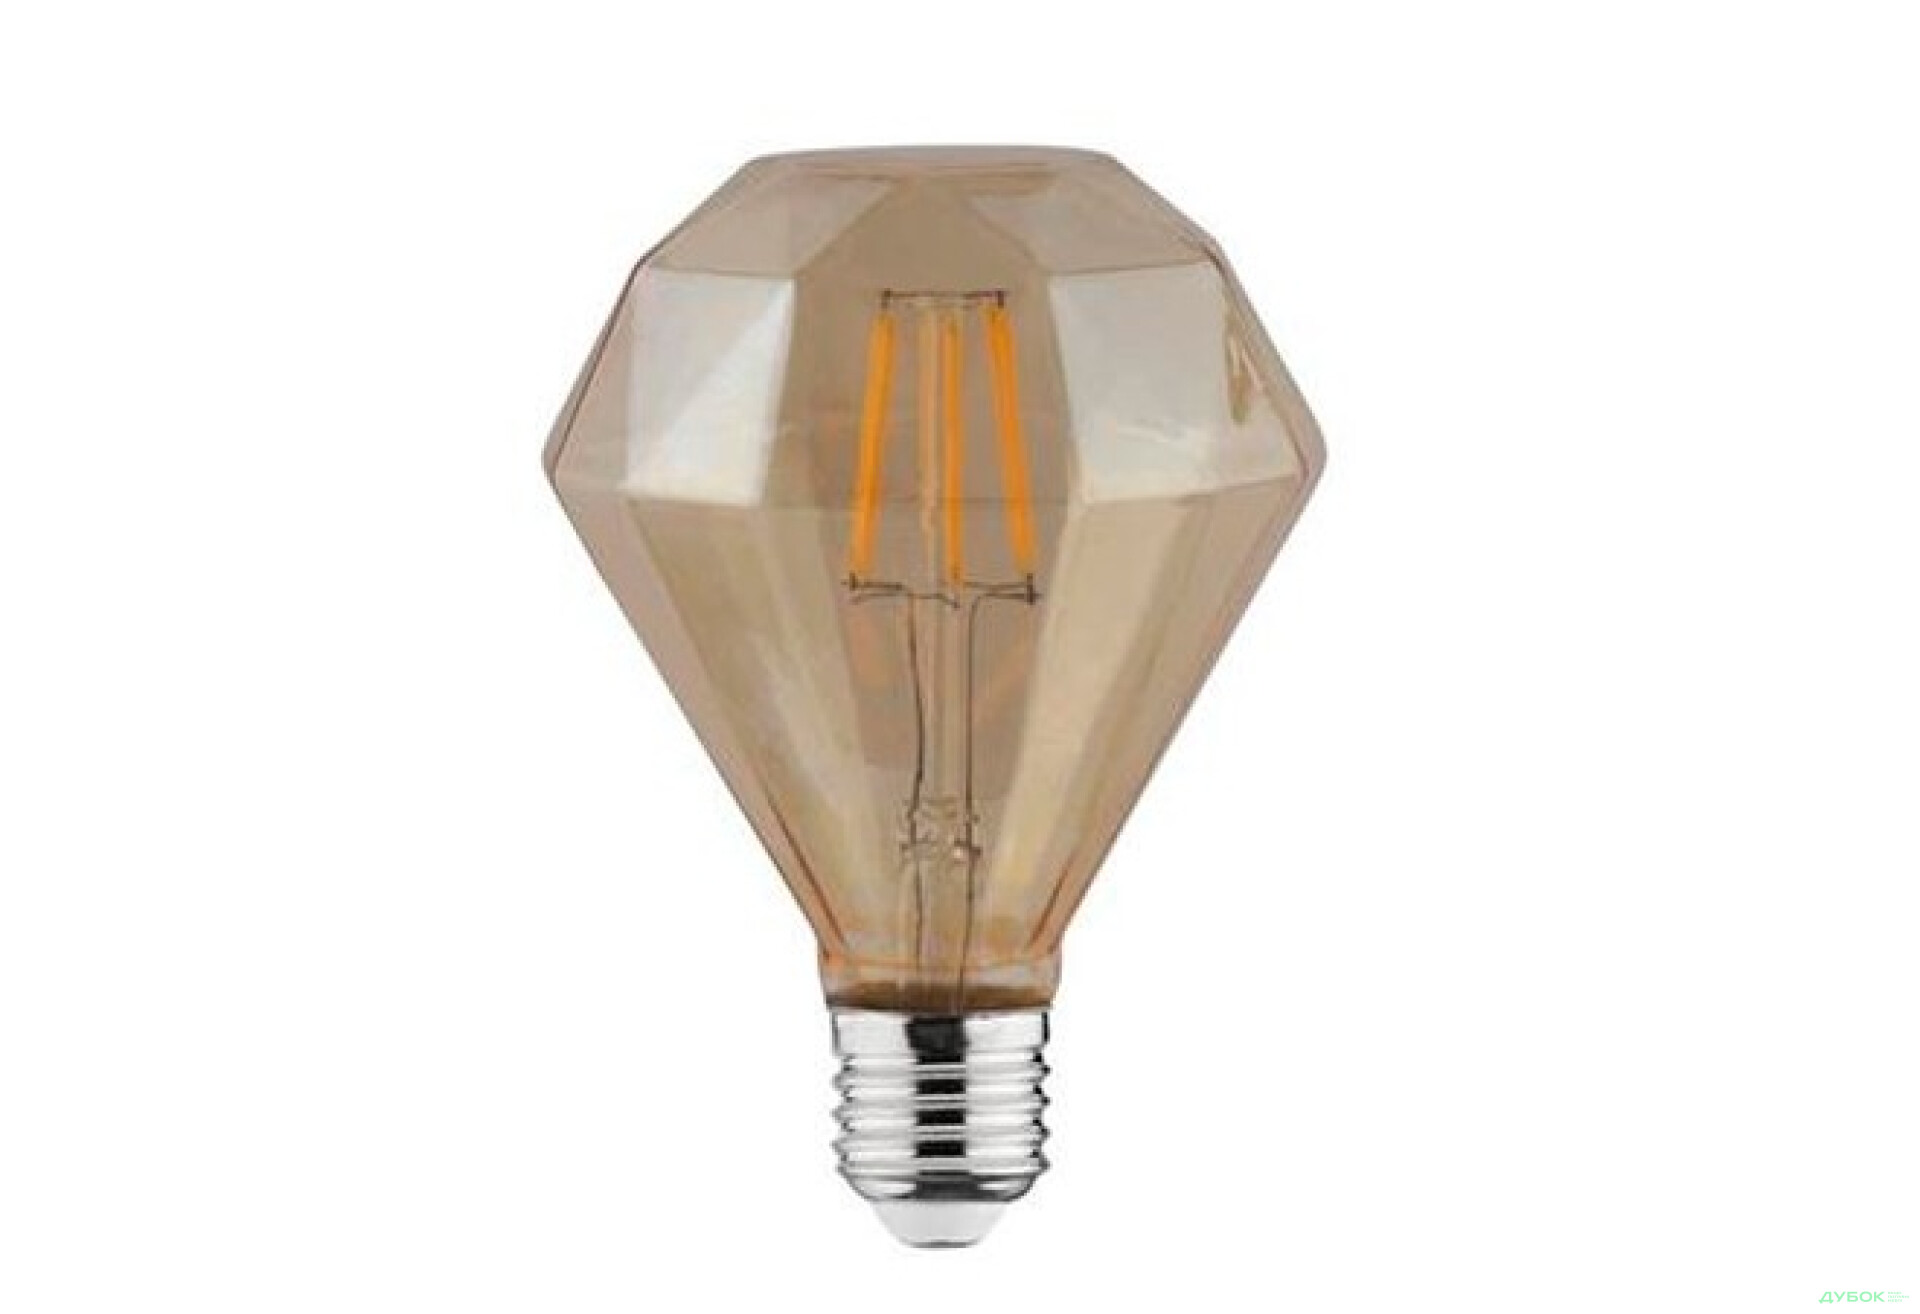 Фото 1 - Лампа Filament Rustic diamond-4 4Вт Е27 2200К, 001-034-0004 Horoz Electric